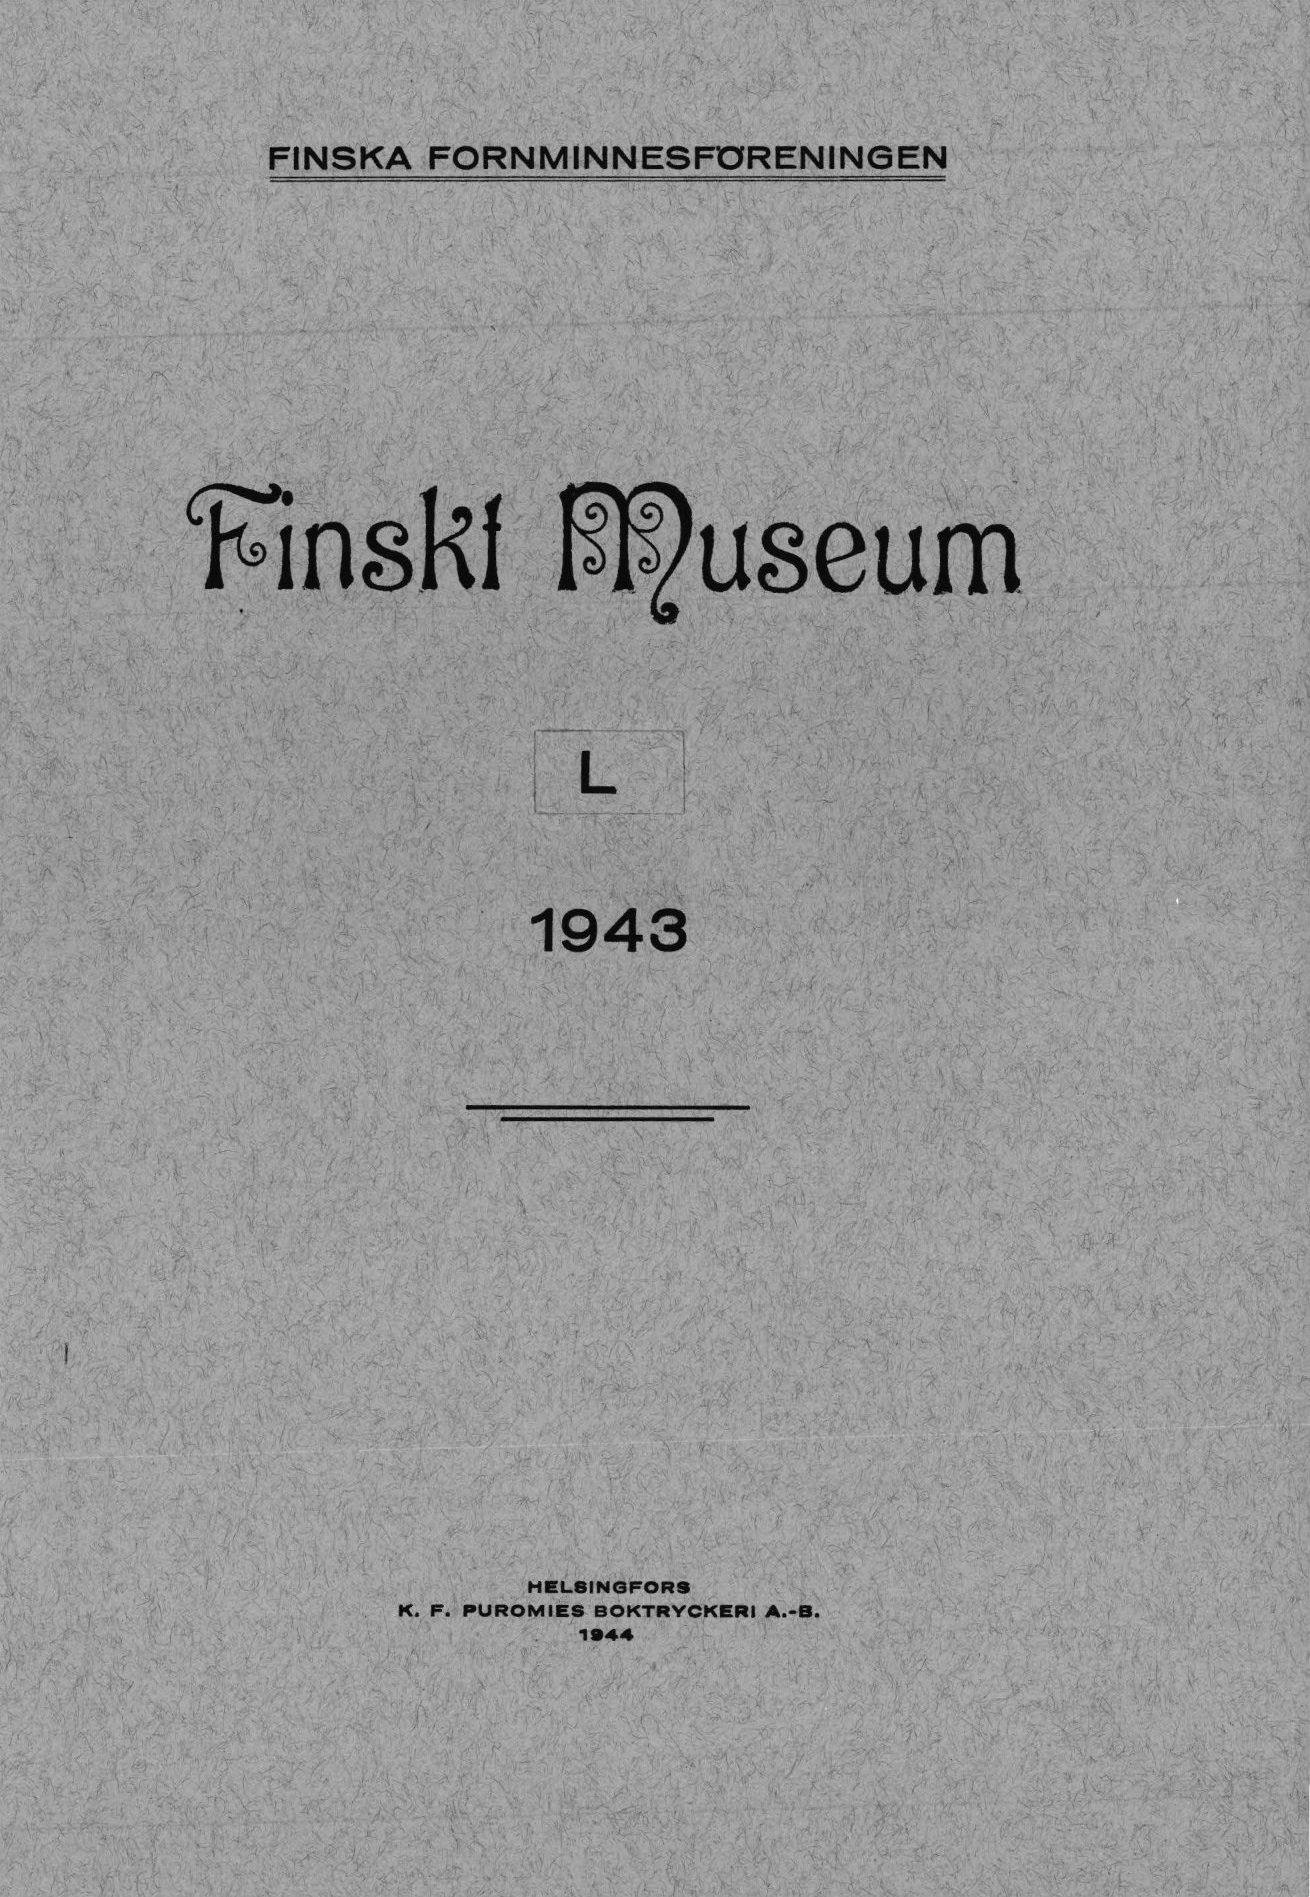 					Visa Vol 50: Finskt Museum 1943
				